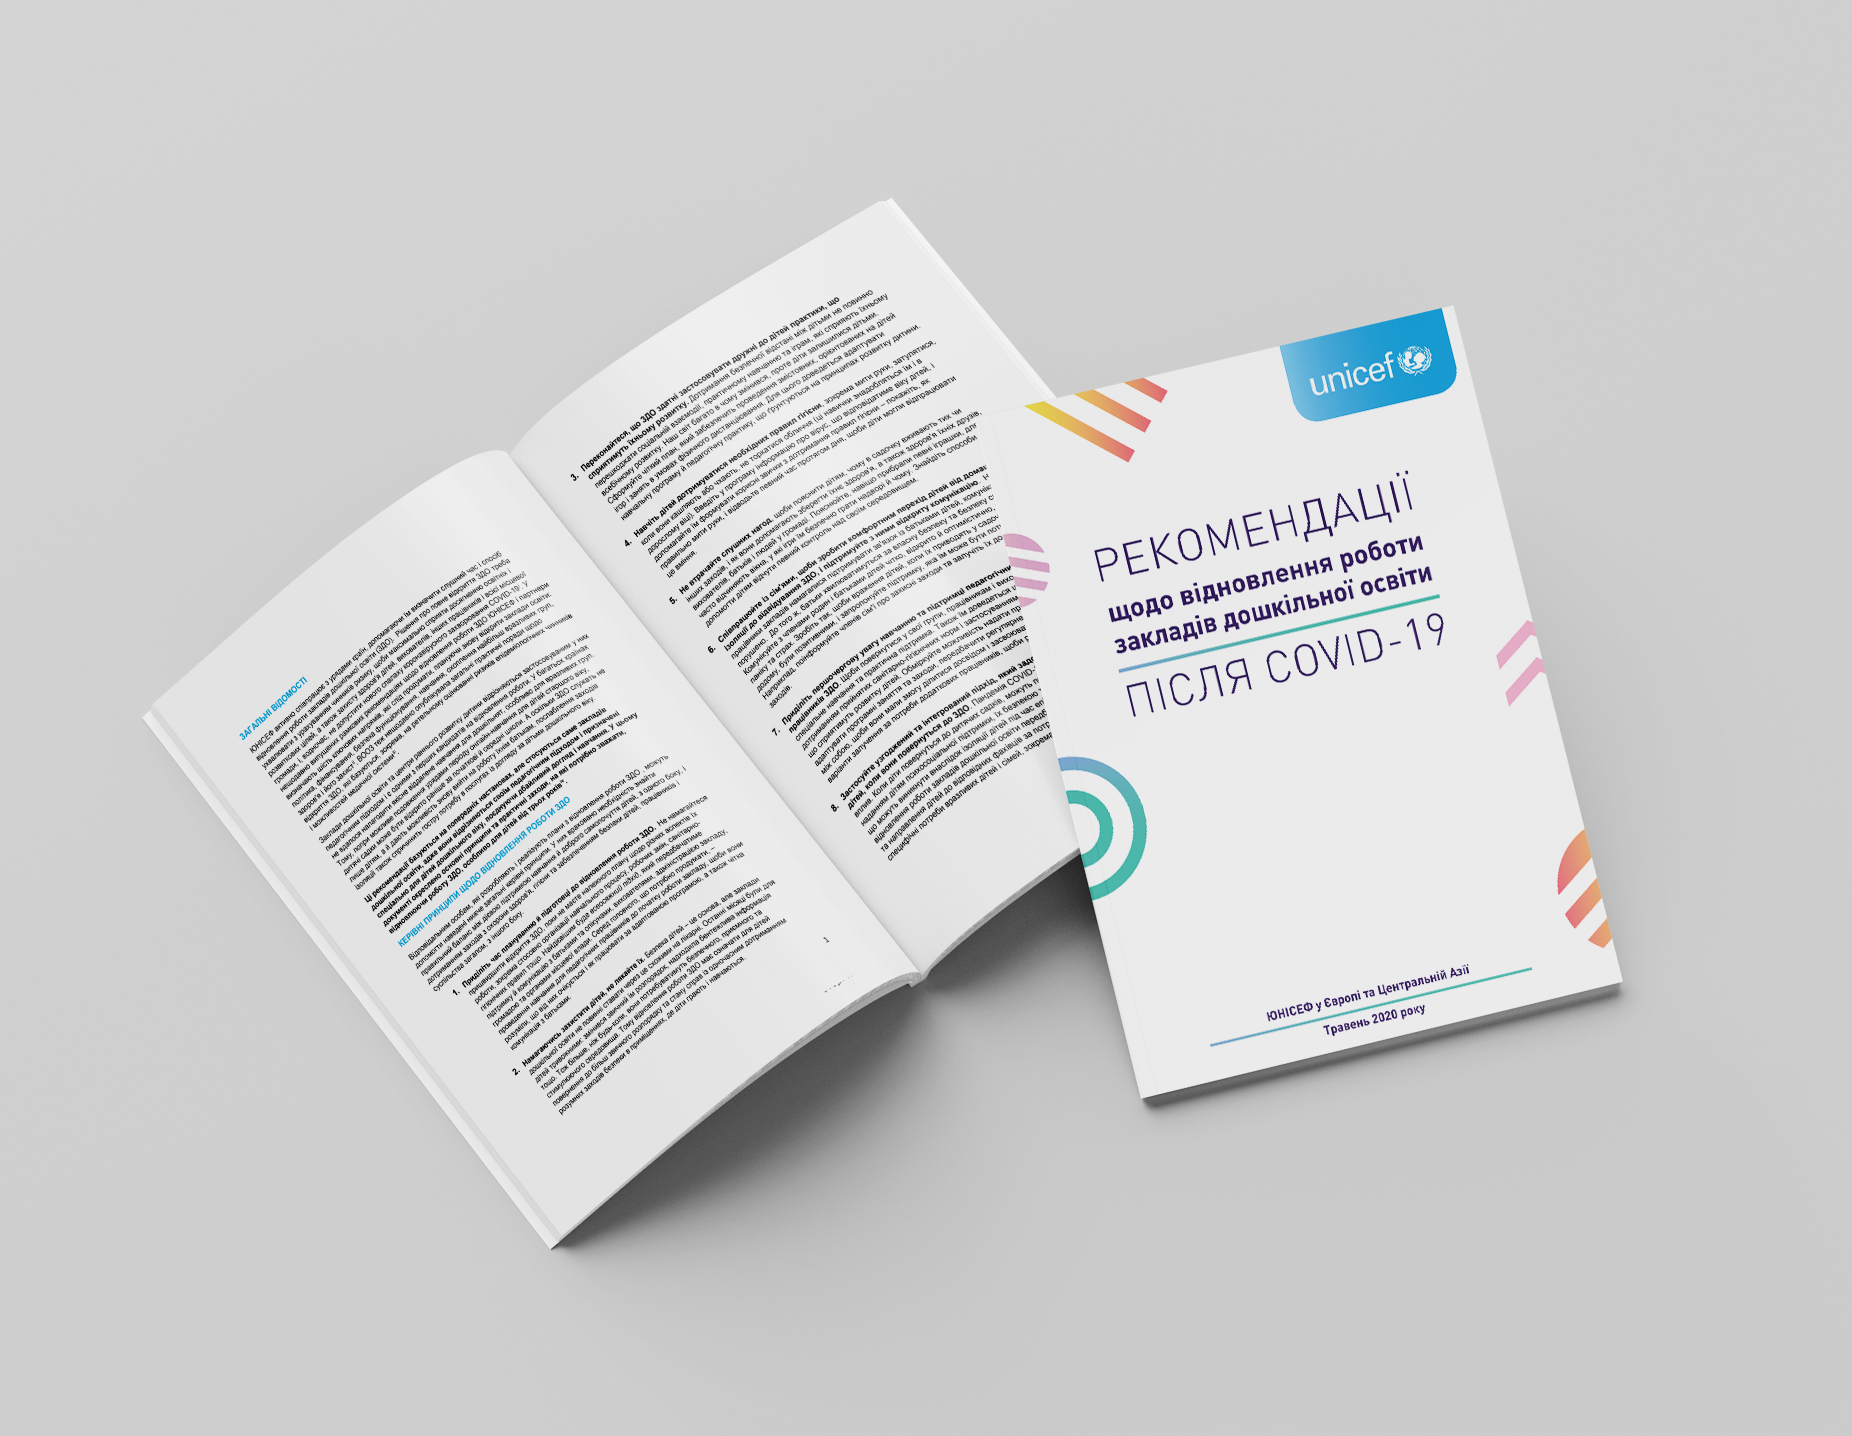 Посібник «Рекомендації щодо відновлення роботи закладів дошкільної освіти після COVID-19».